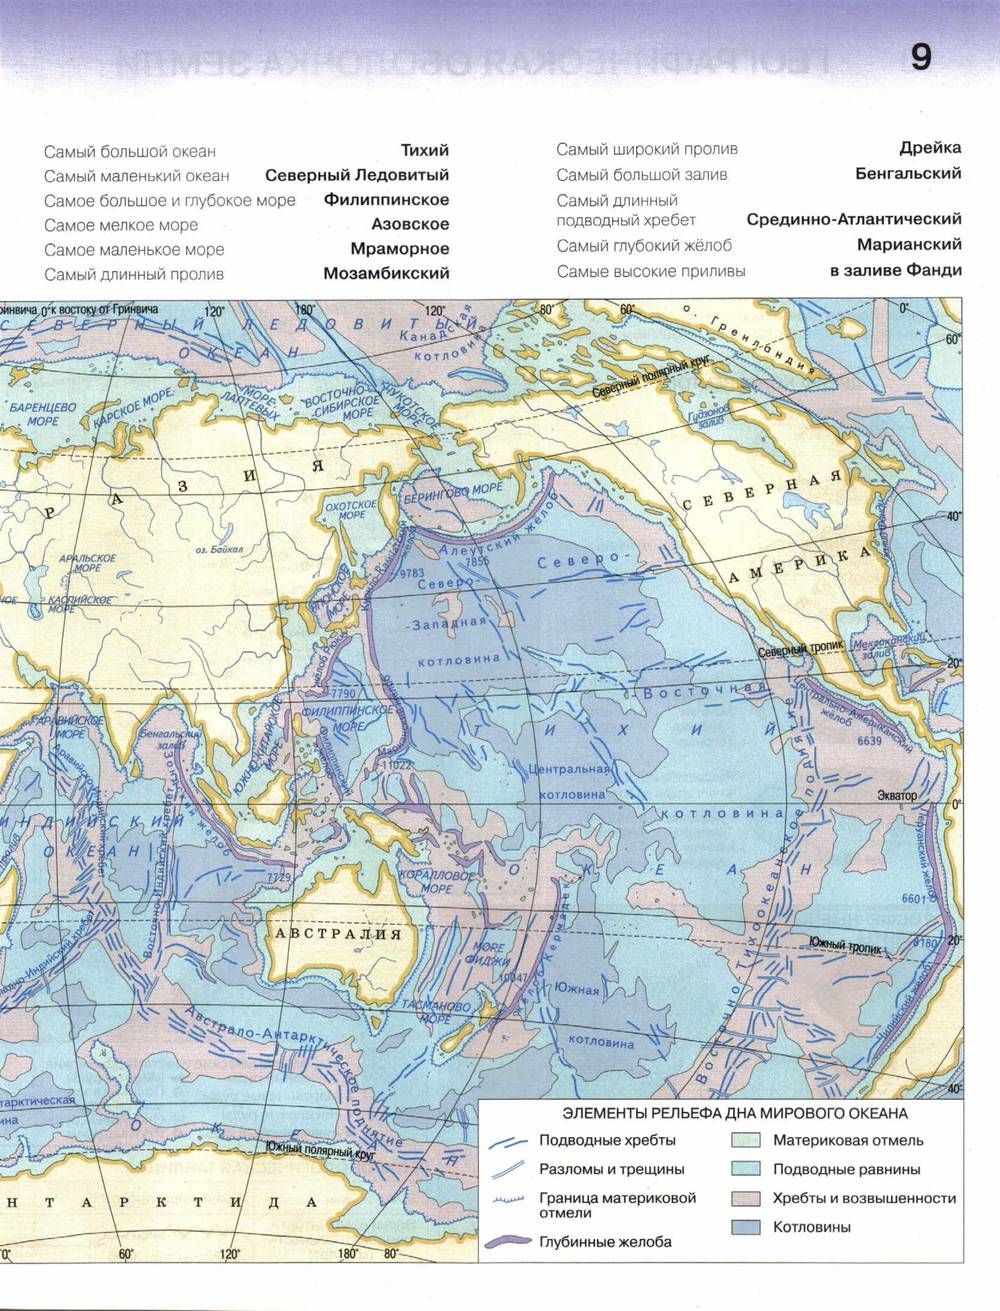 Атлас тихого океана. Мировой океан 7 класс география атлас. Контурная карта по географии 7 класс материки океаны народы и страны. Атлас 7 класс география карта тихий океан. Карта мирового океана 7 класс атлас.